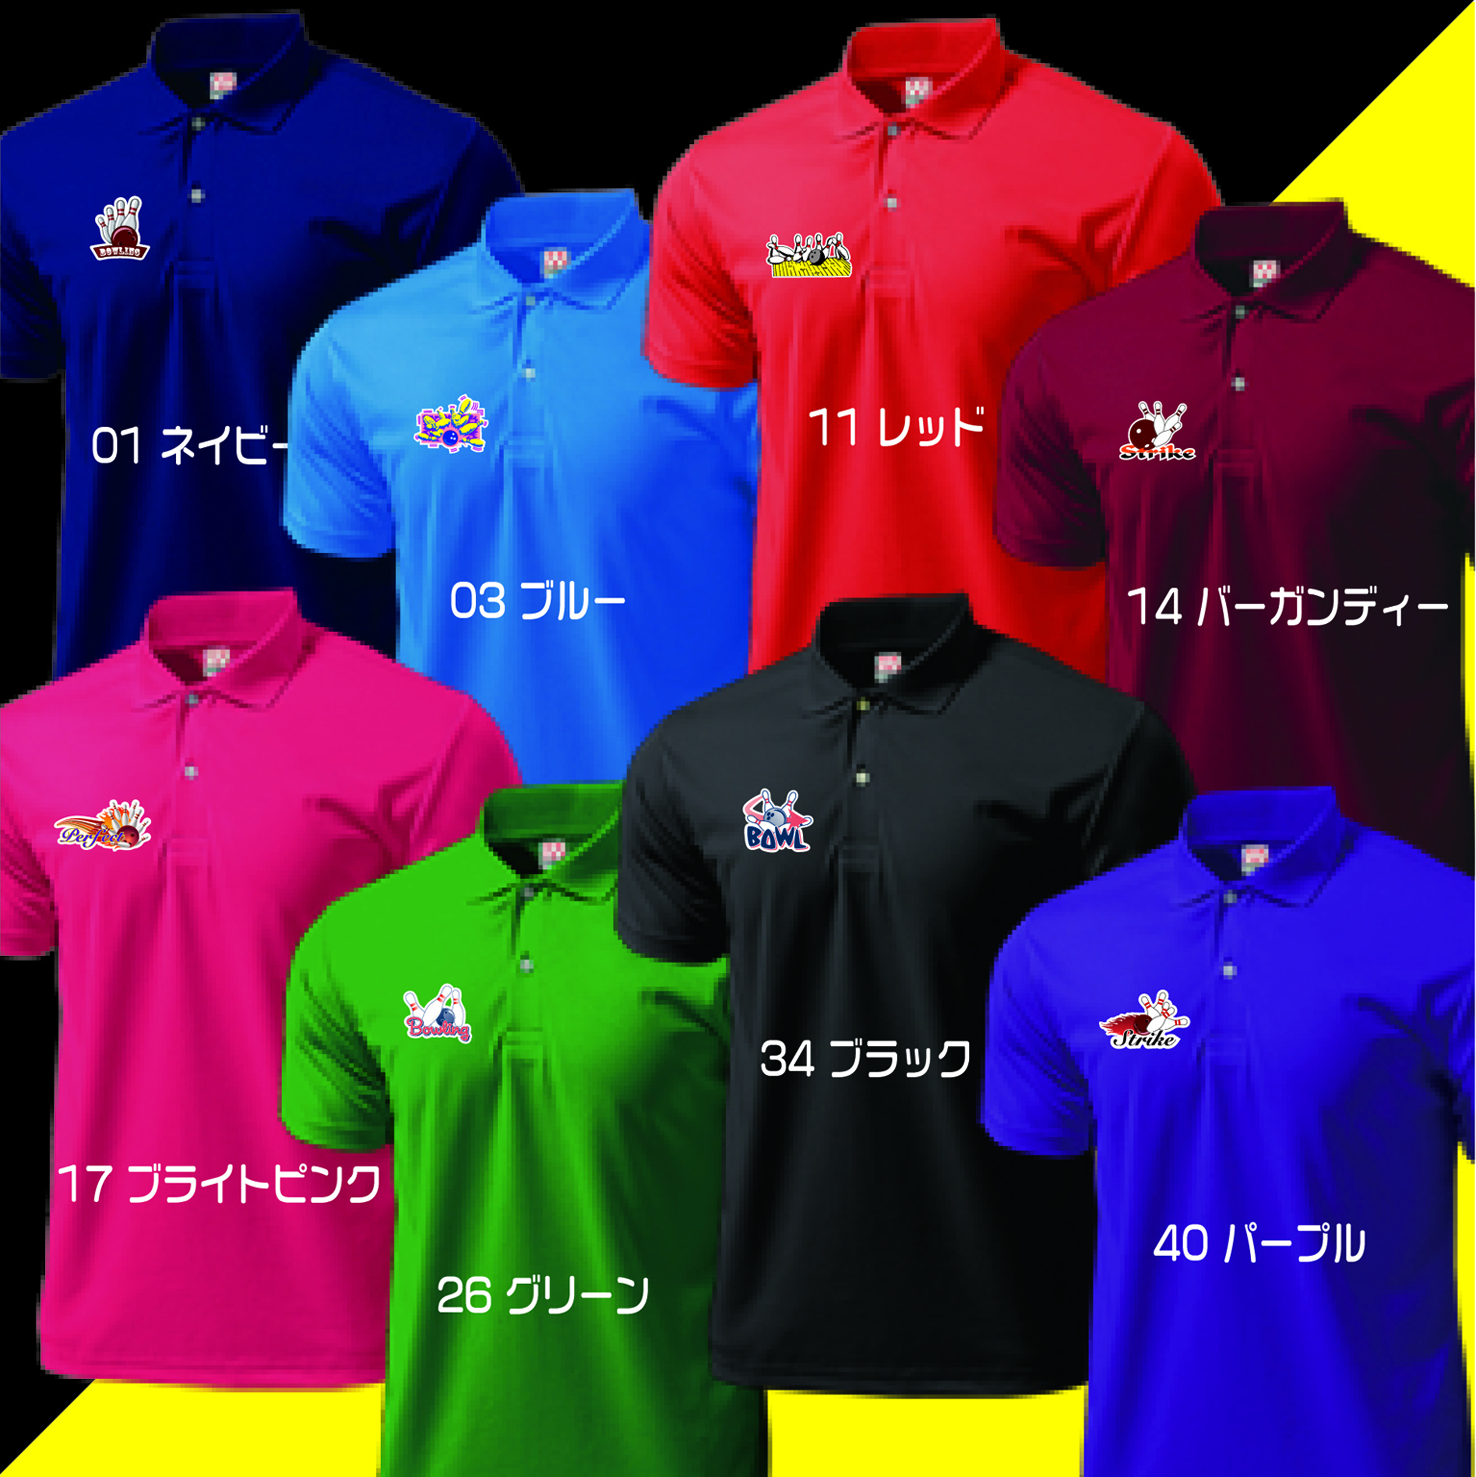 ボウリングデザインポロシャツ335、ボウリングウェア、ボウリングシャツ、ボウリングユニフォーム、送料無料画像